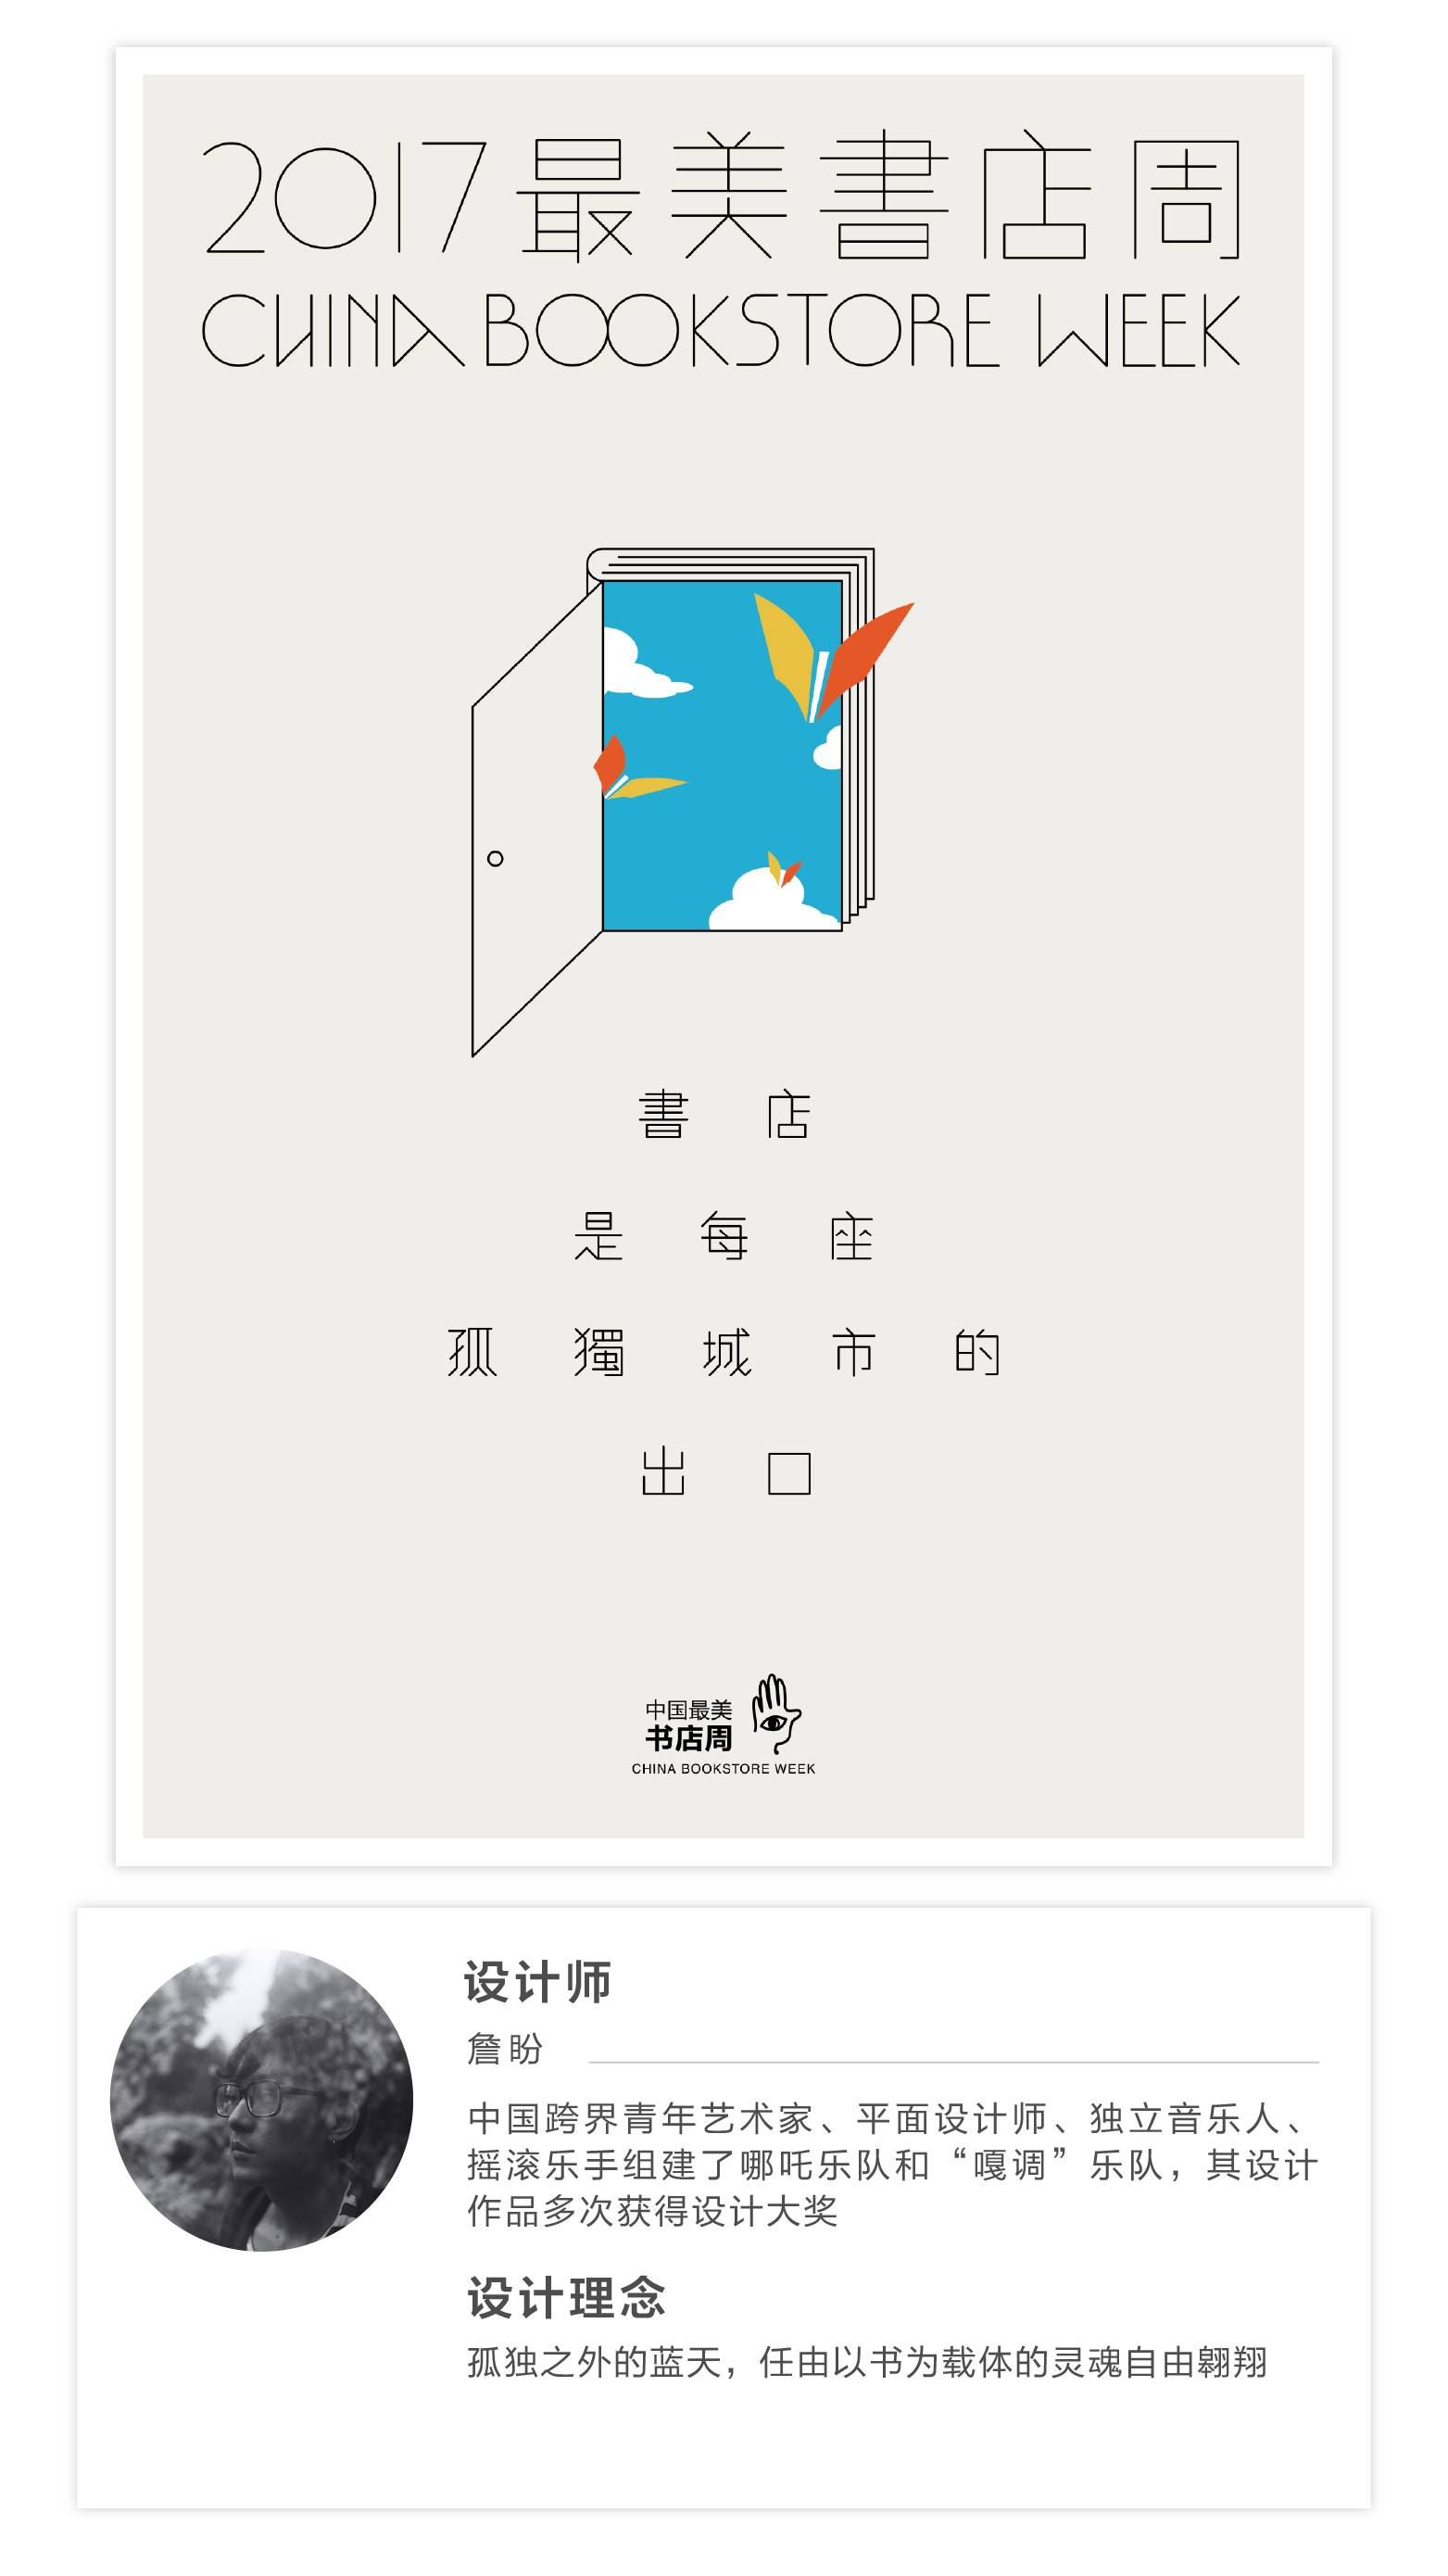 这张将挂满全国书店的中国最美书店周海报,将由你来决定!